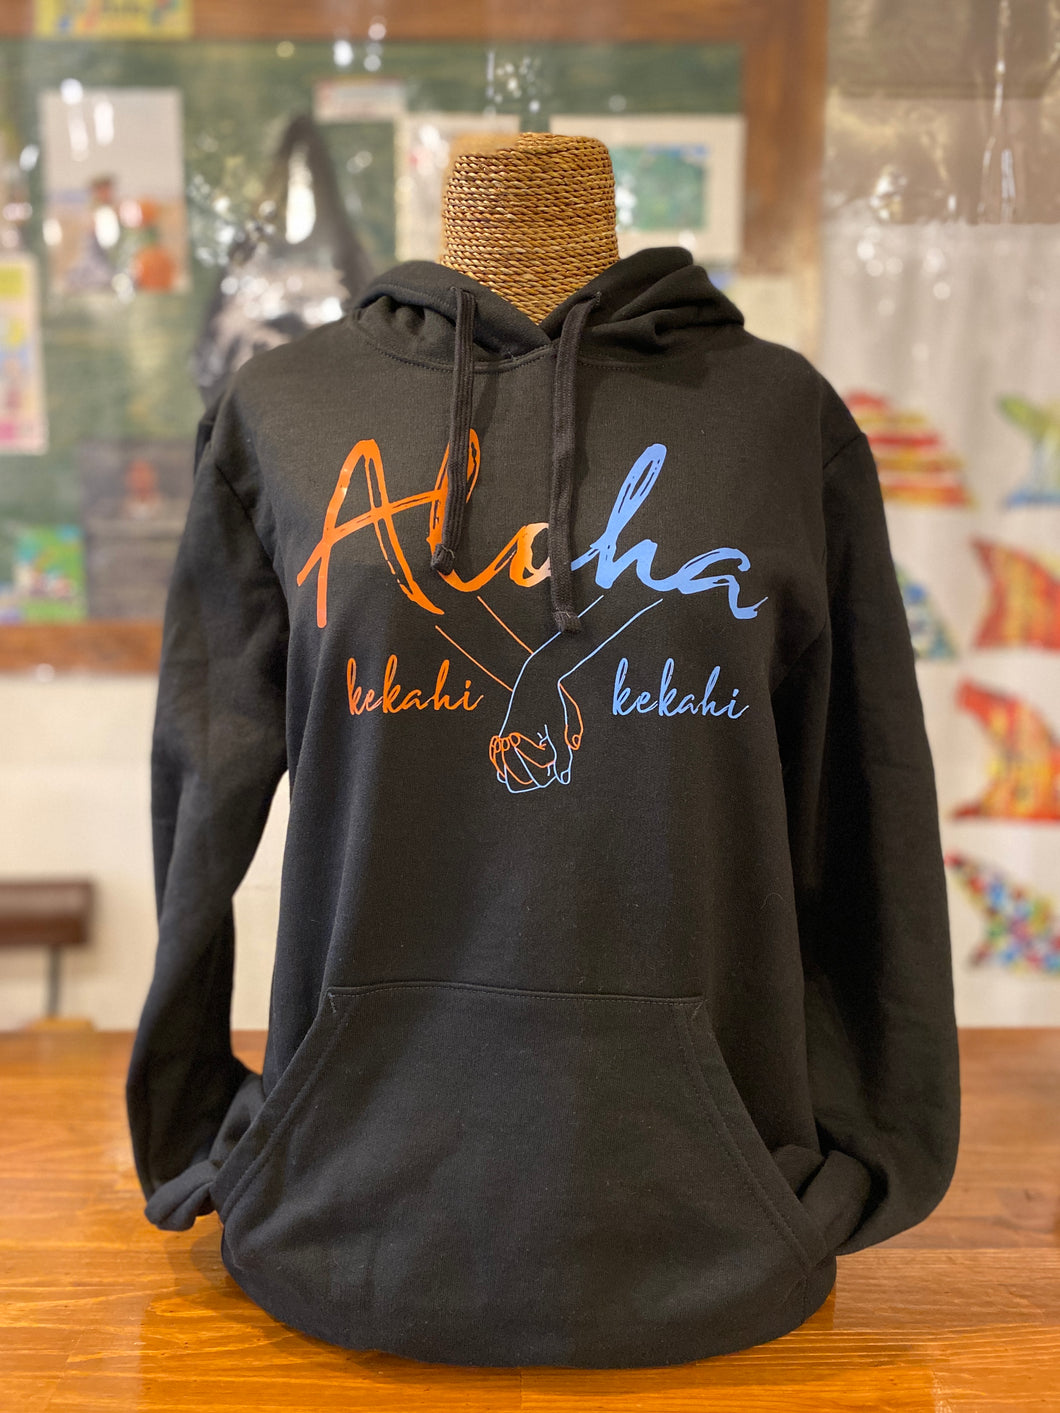 Hula is Life ”Aloha Kekahi I Kekahi”パーカーXXLサイズ